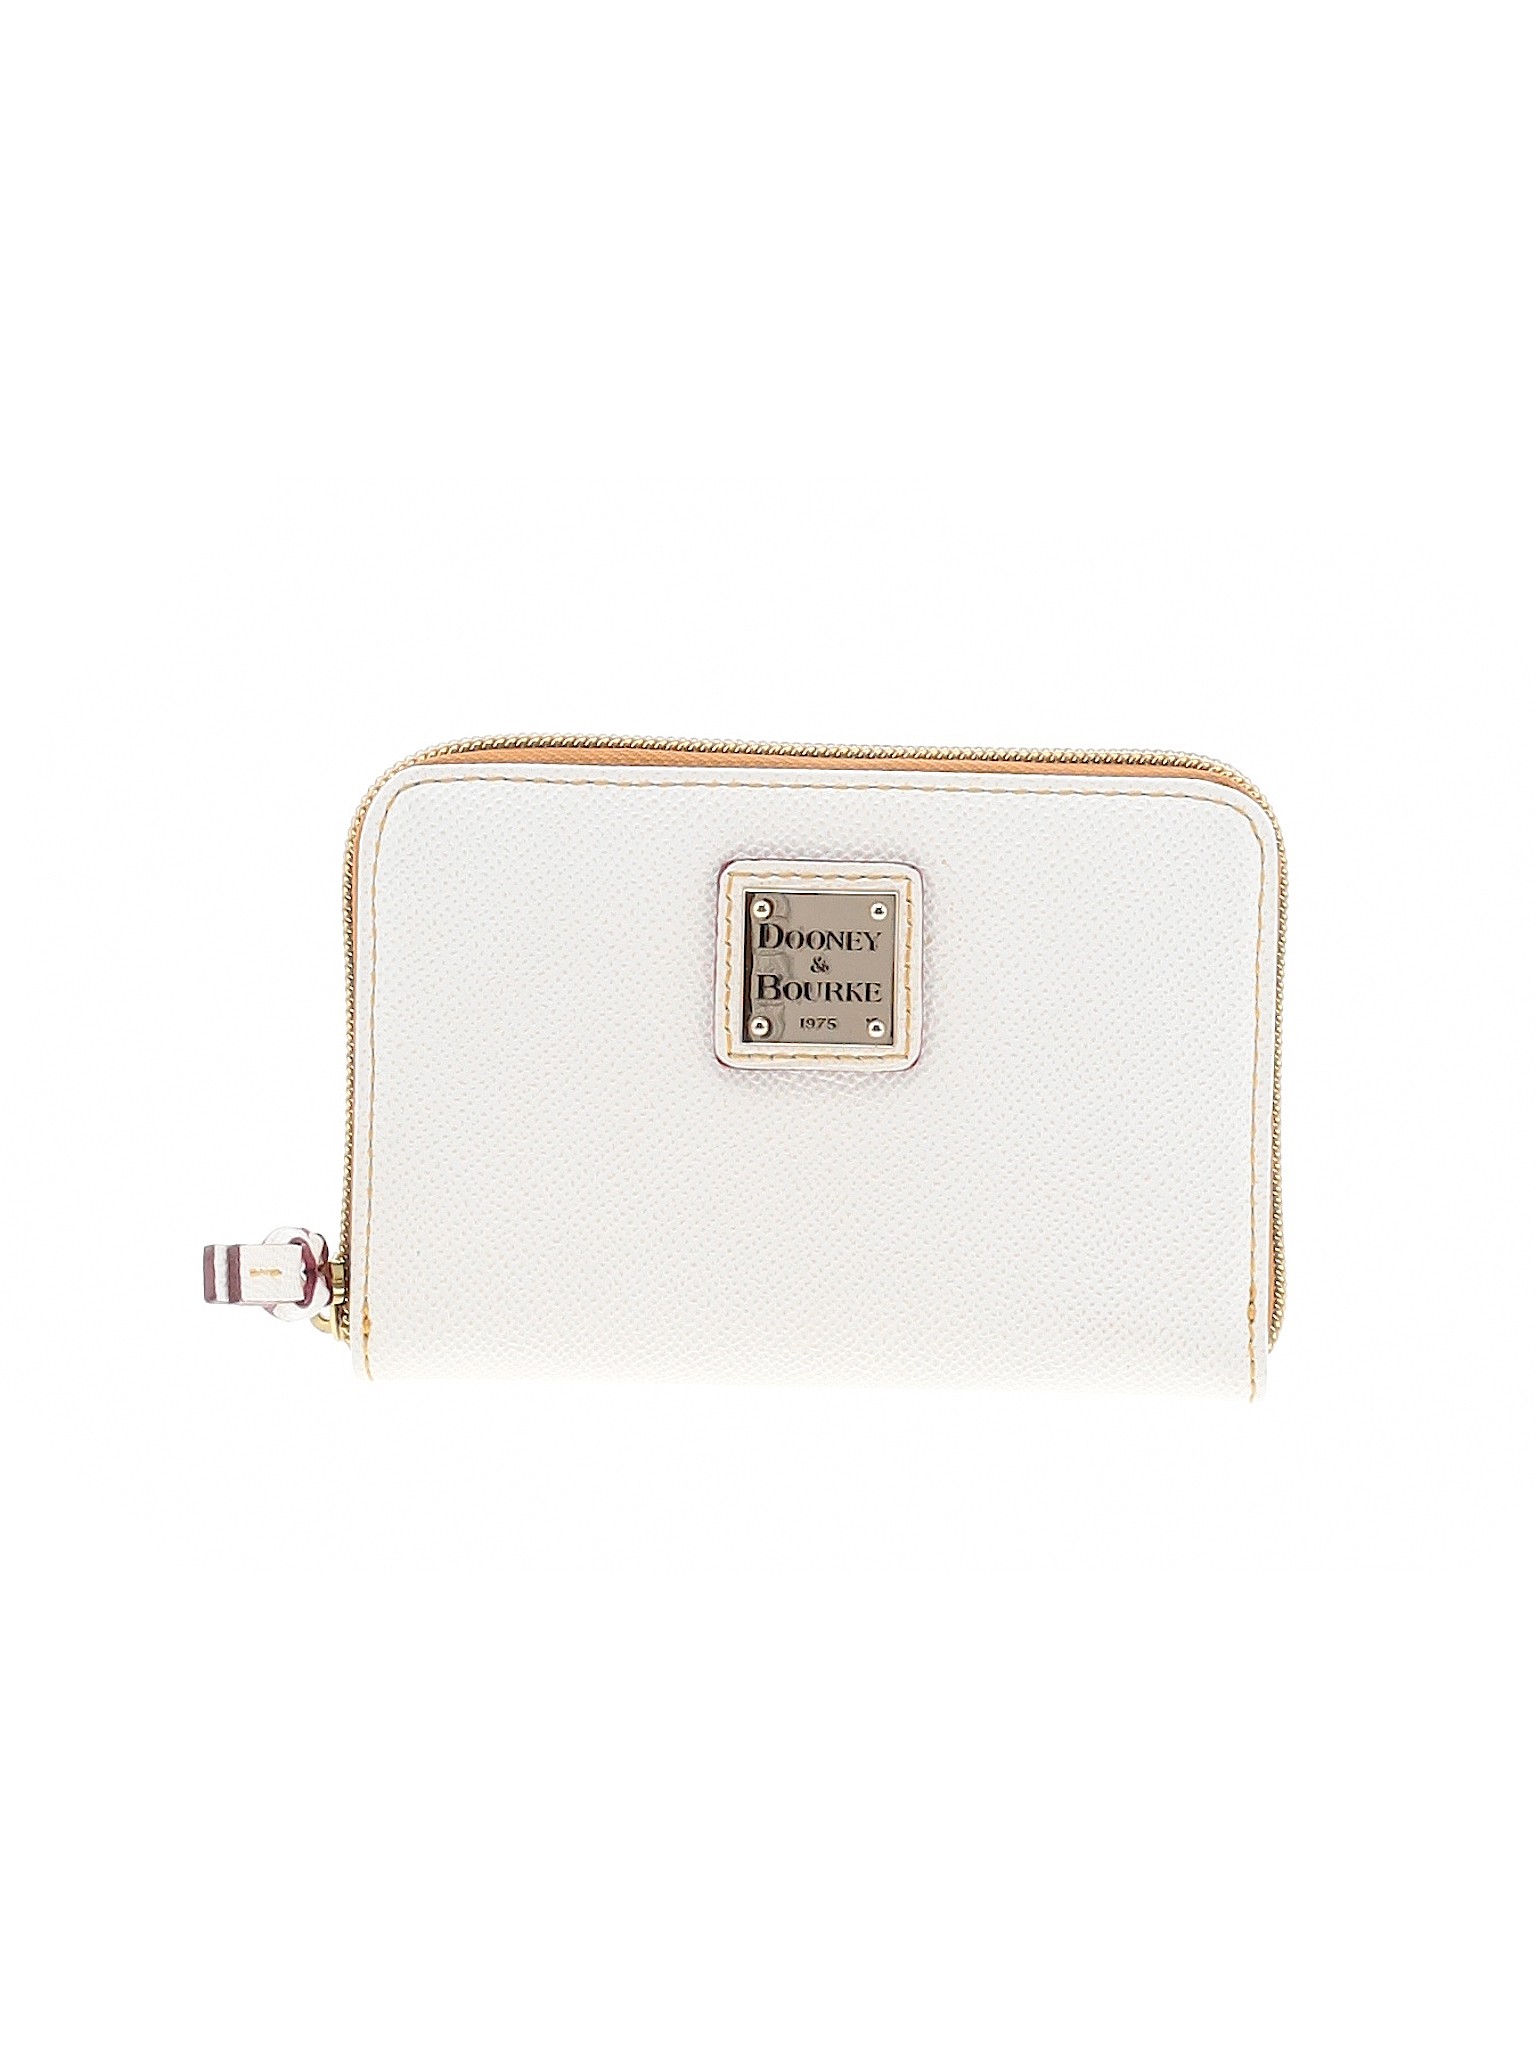 Dooney & Bourke Women White Leather Wallet One Size | eBay